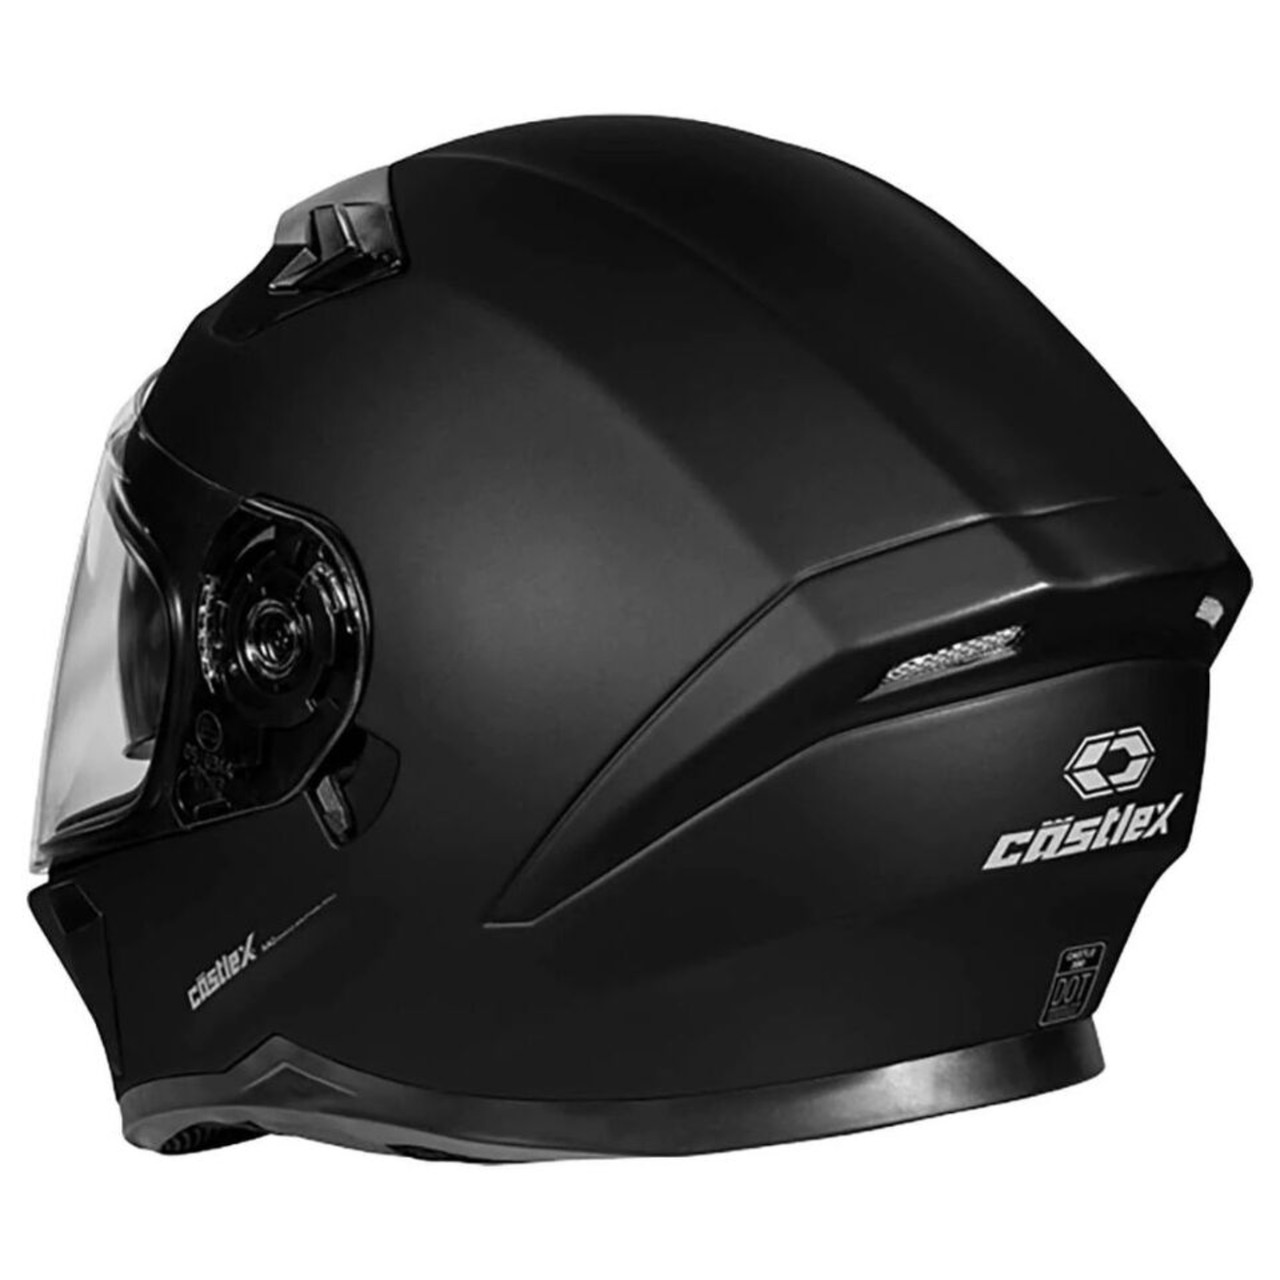 Castle X New 3X-Large Matte Black CX935 Snowmobile Helmet, 36-16089T